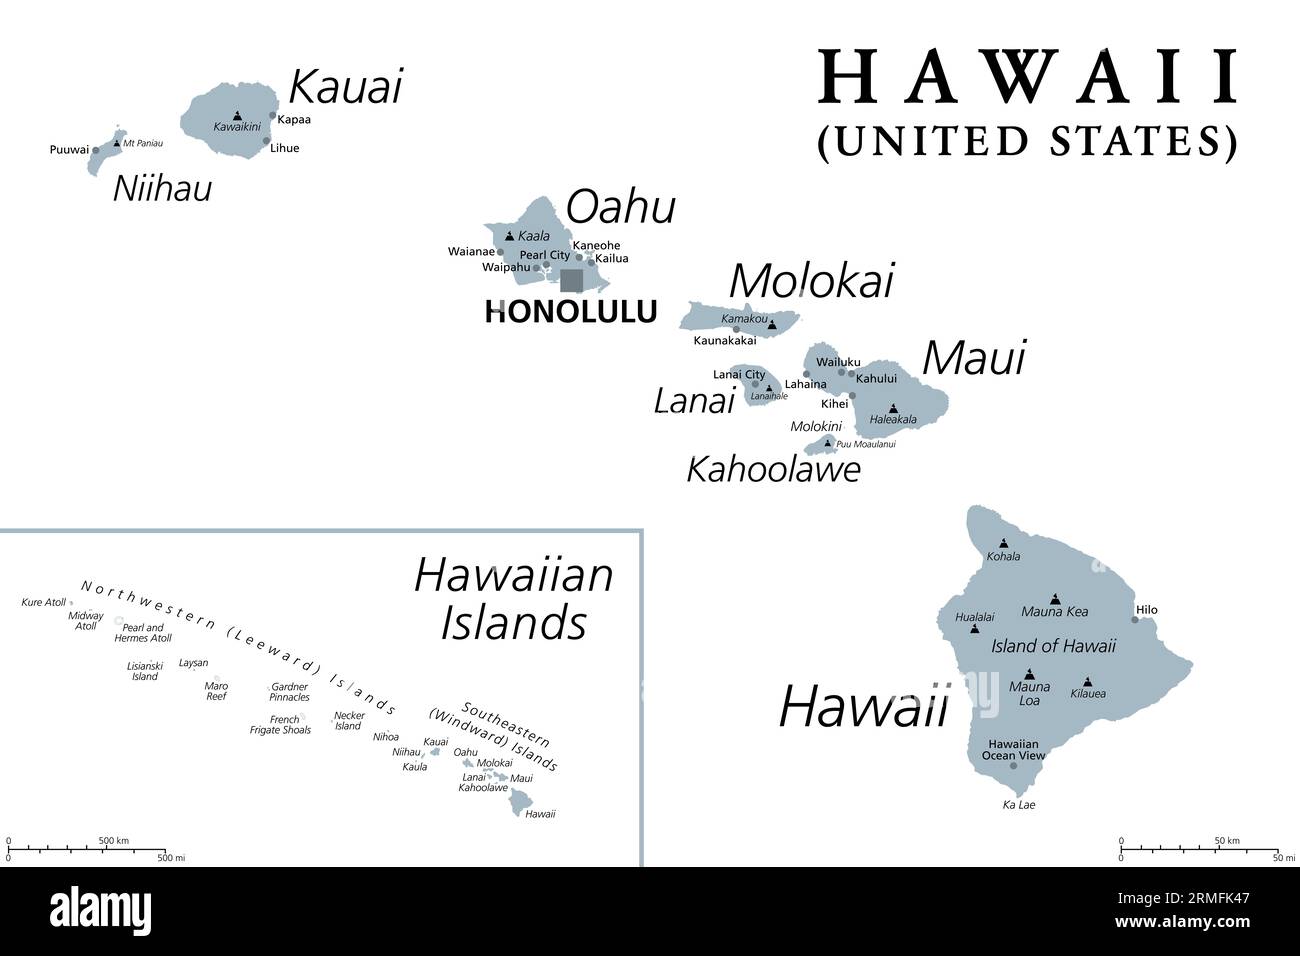 Hawaiianische Inseln, graue politische Karte. Archipel mit 8 großen vulkanischen Inseln, mehreren Atollen und zahlreichen kleineren Inseln im Nordpazifik. Stockfoto